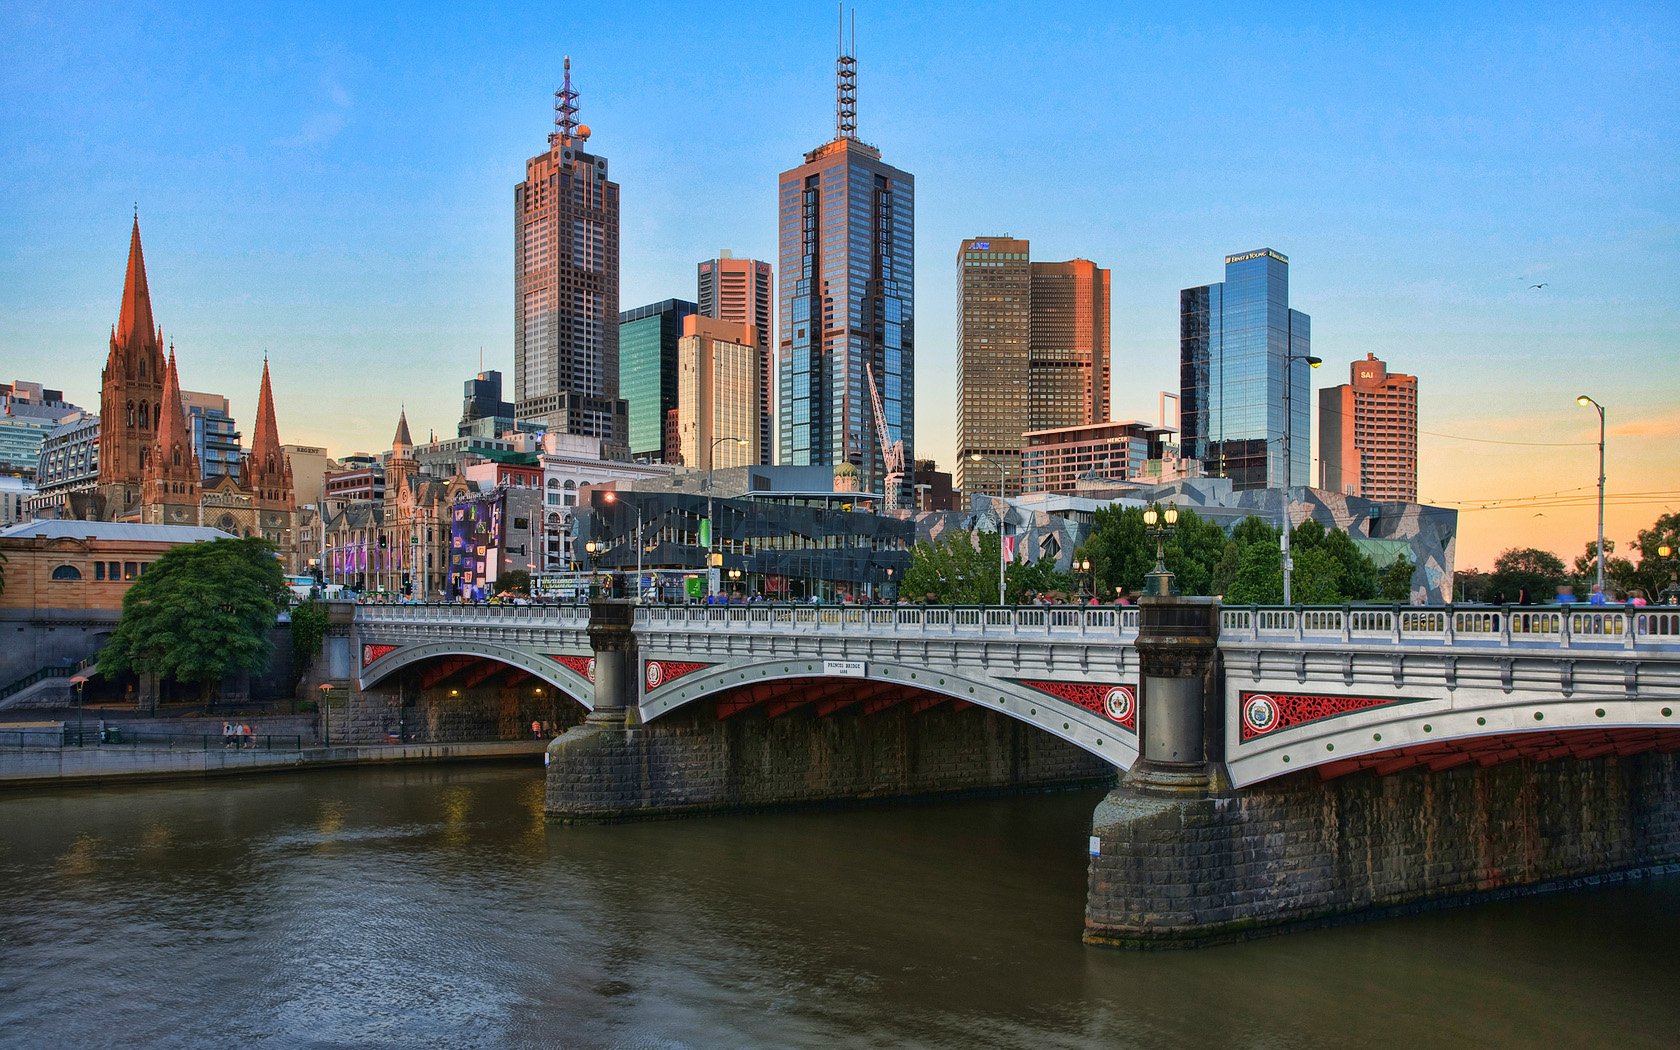 Melbourne City Centre , HD Wallpaper & Backgrounds